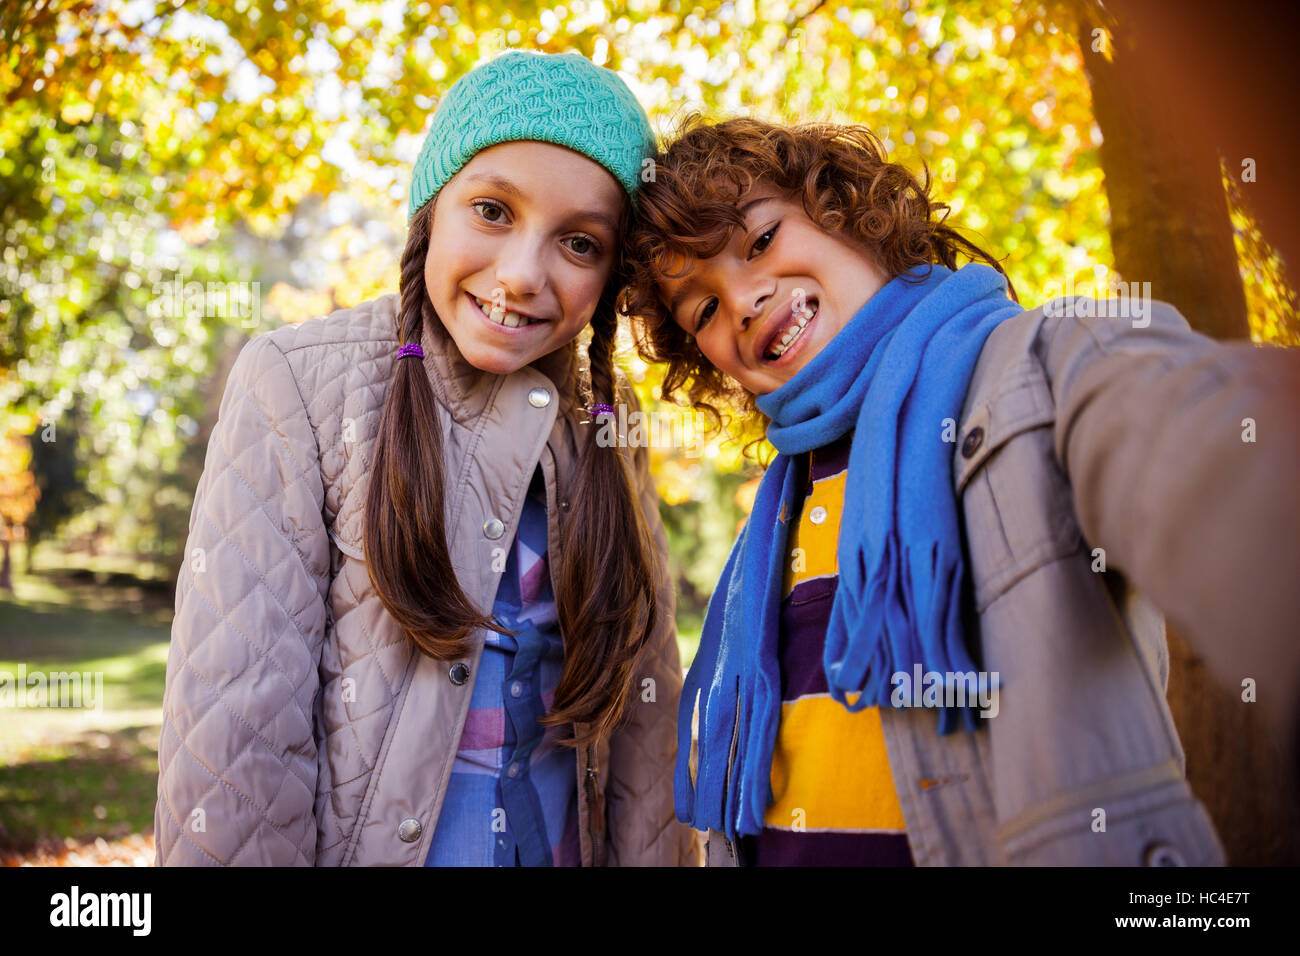 Cheerful siblings taking selfie in park Stock Photo